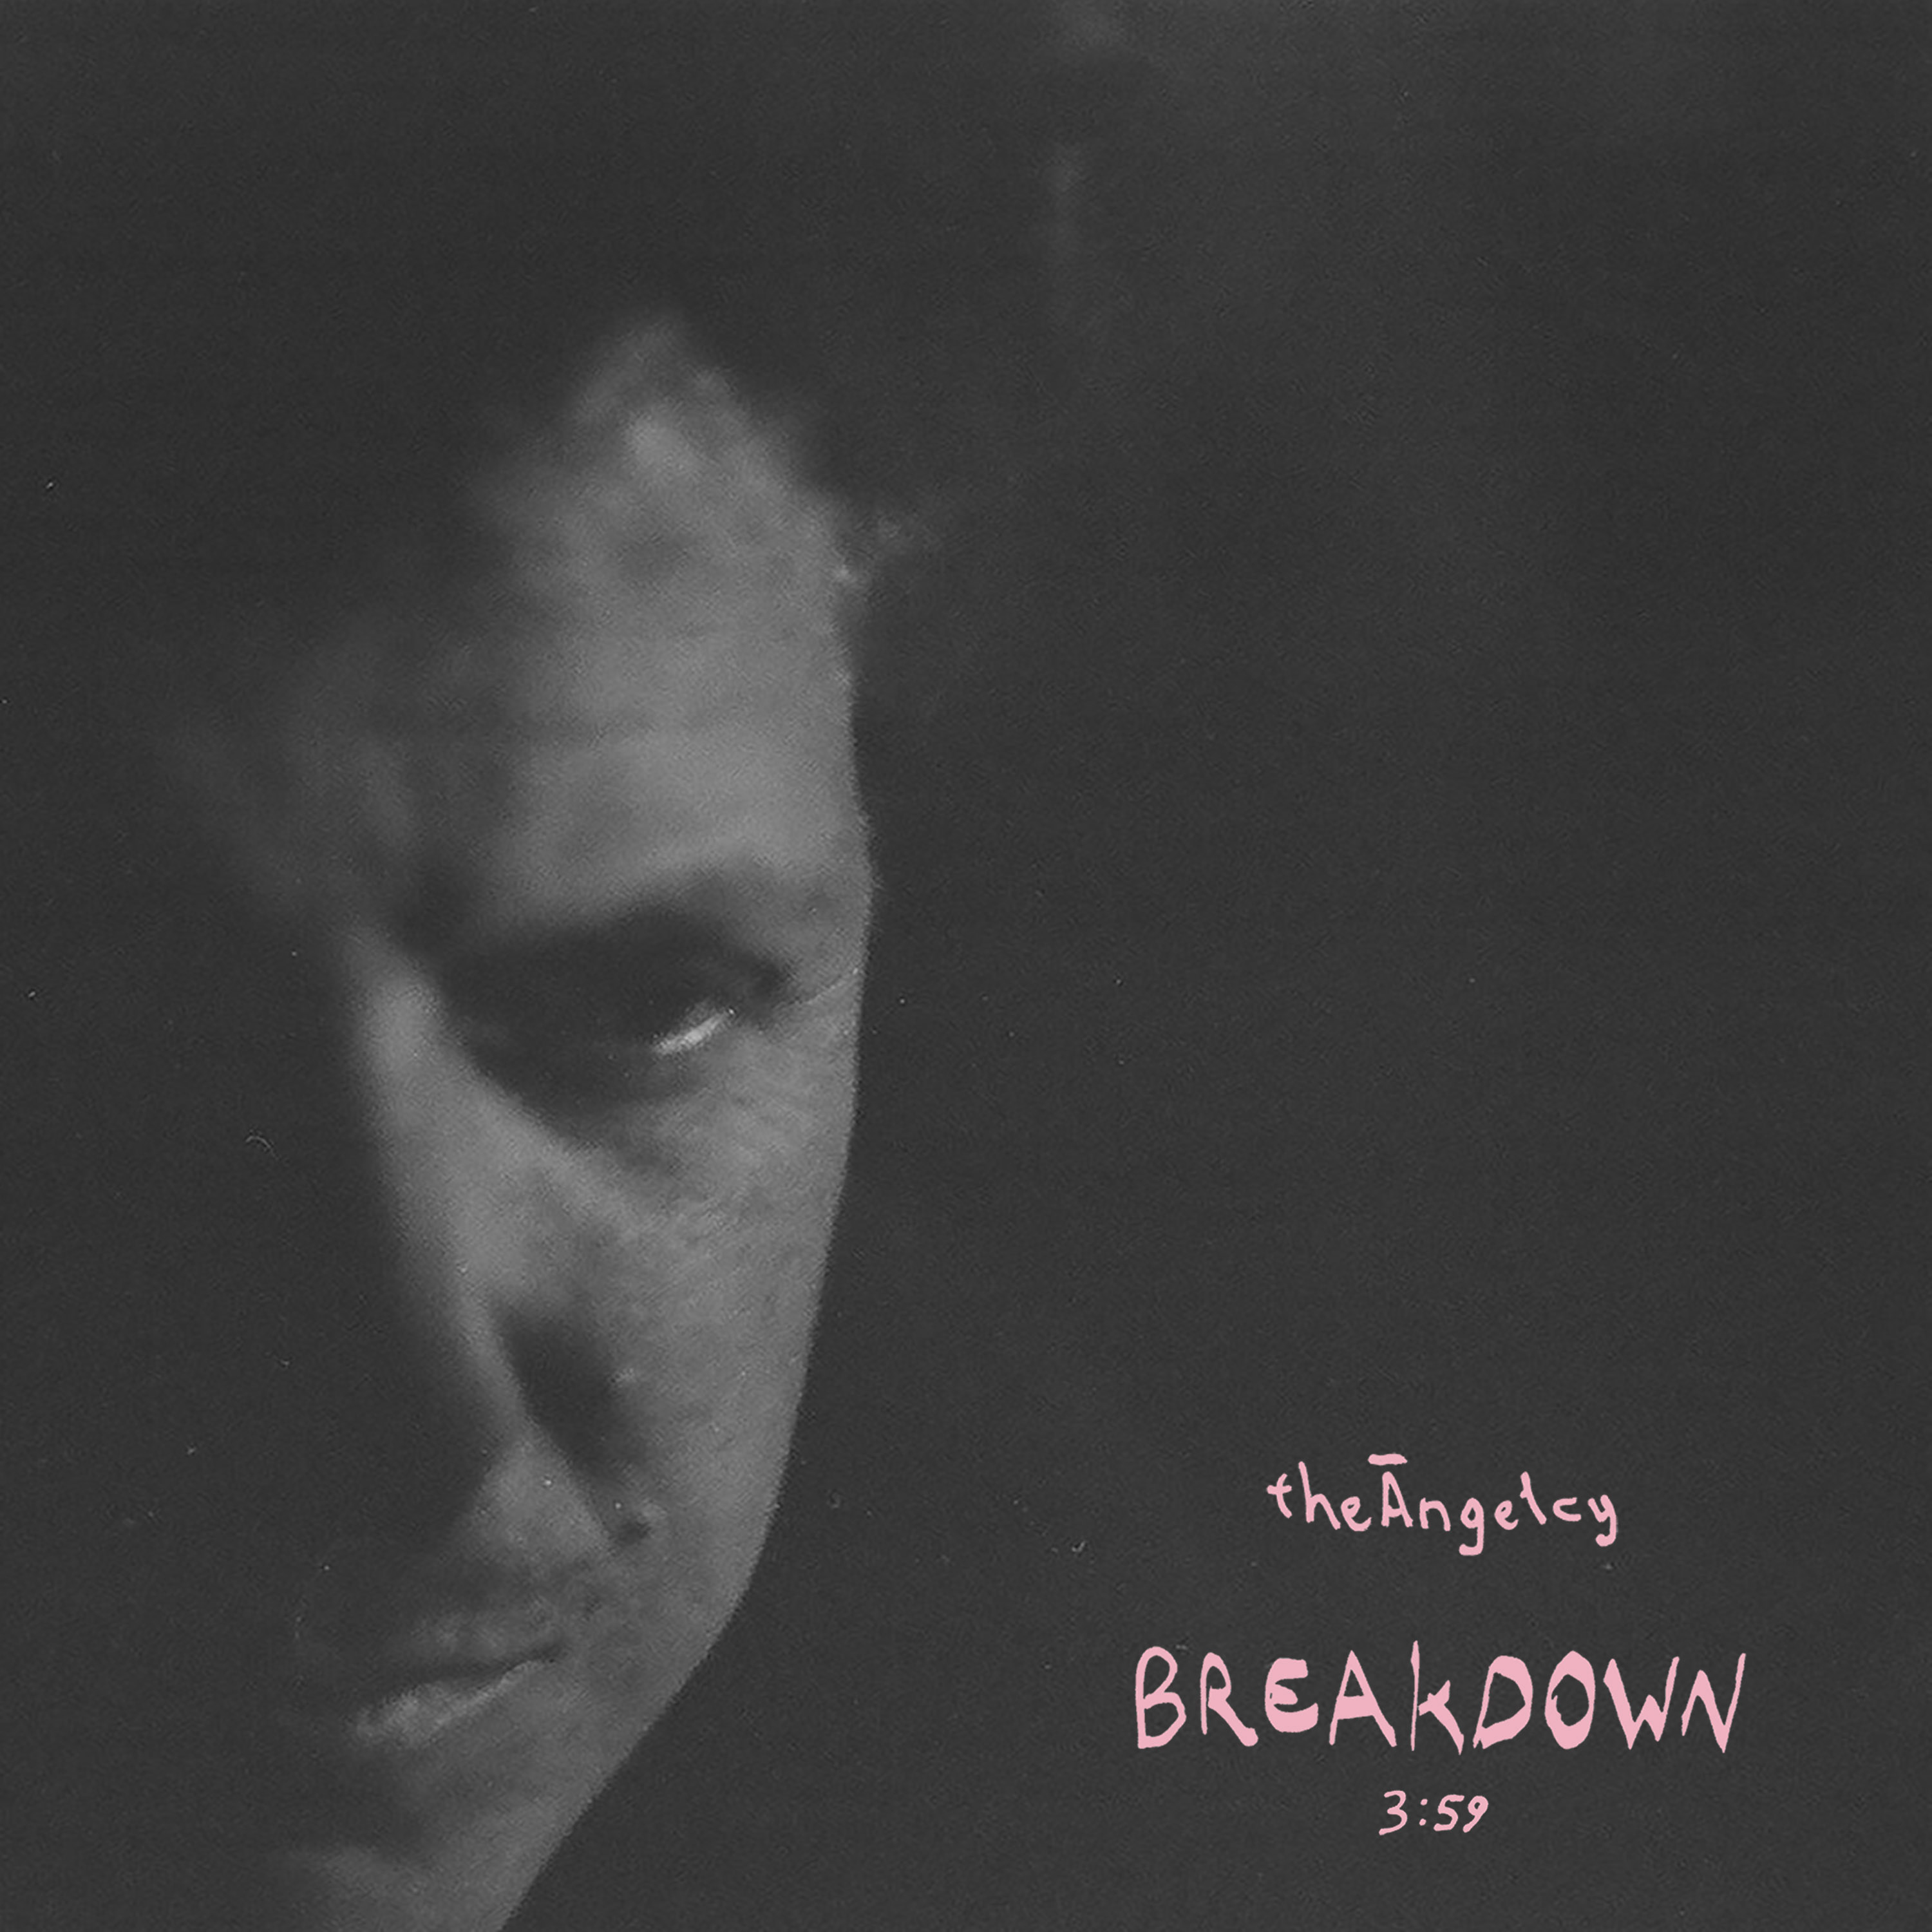 theAngelcy - Breakdown